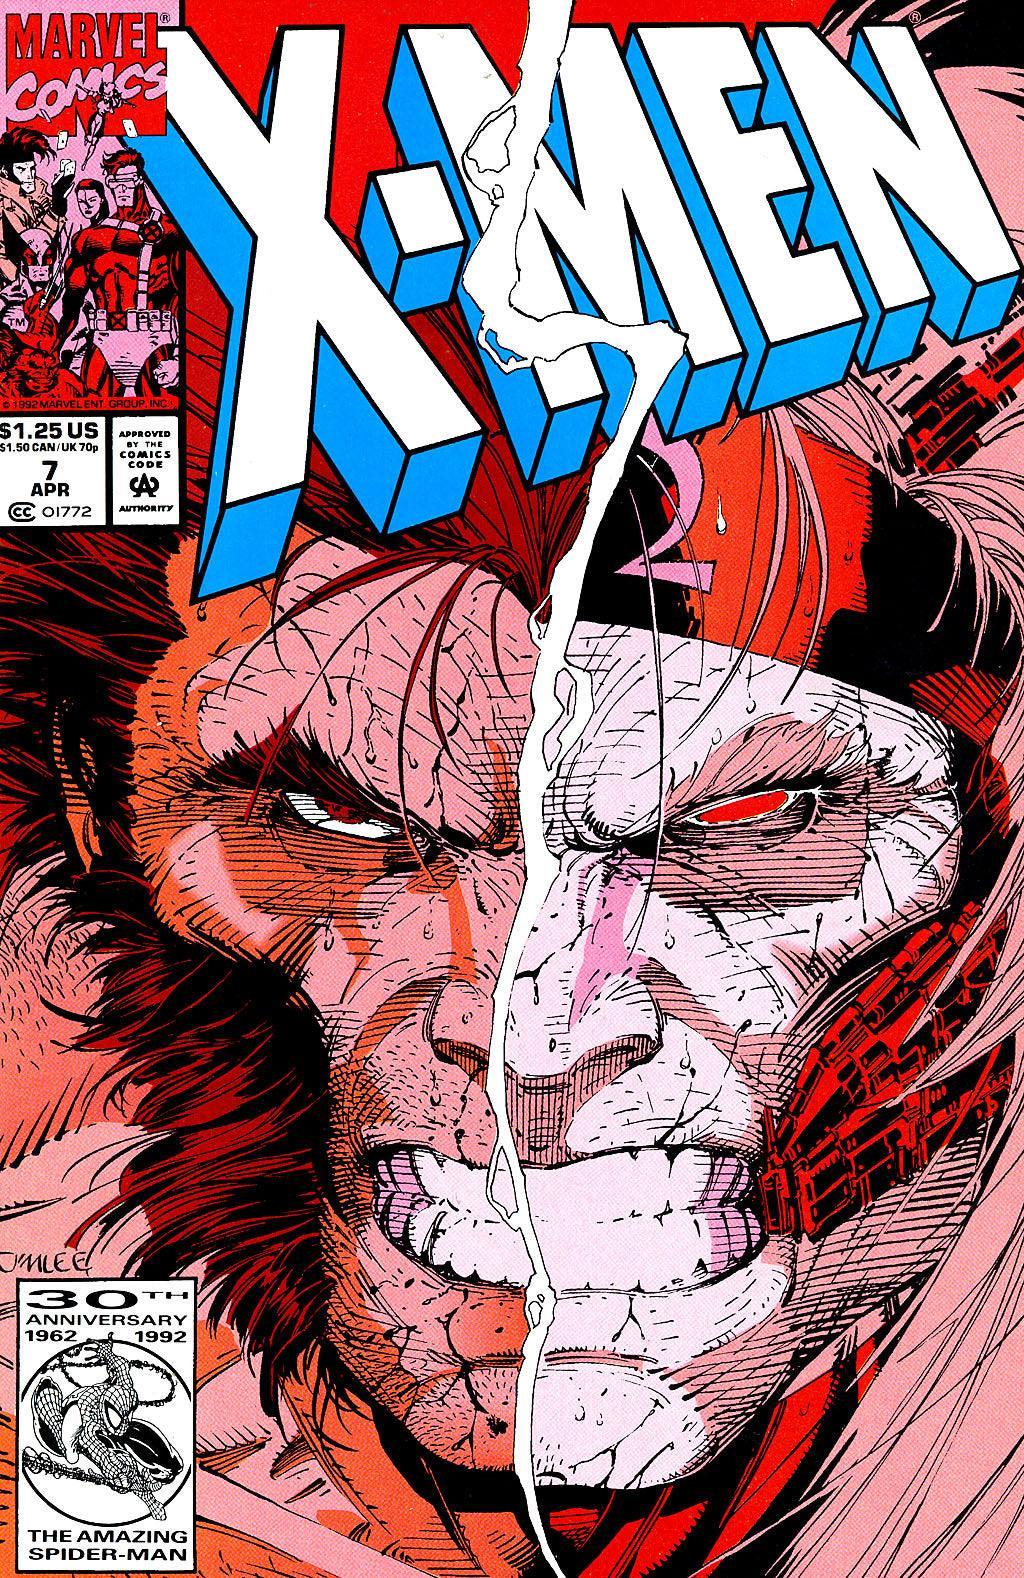 X-MEN VOL 2 #7 - Kings Comics